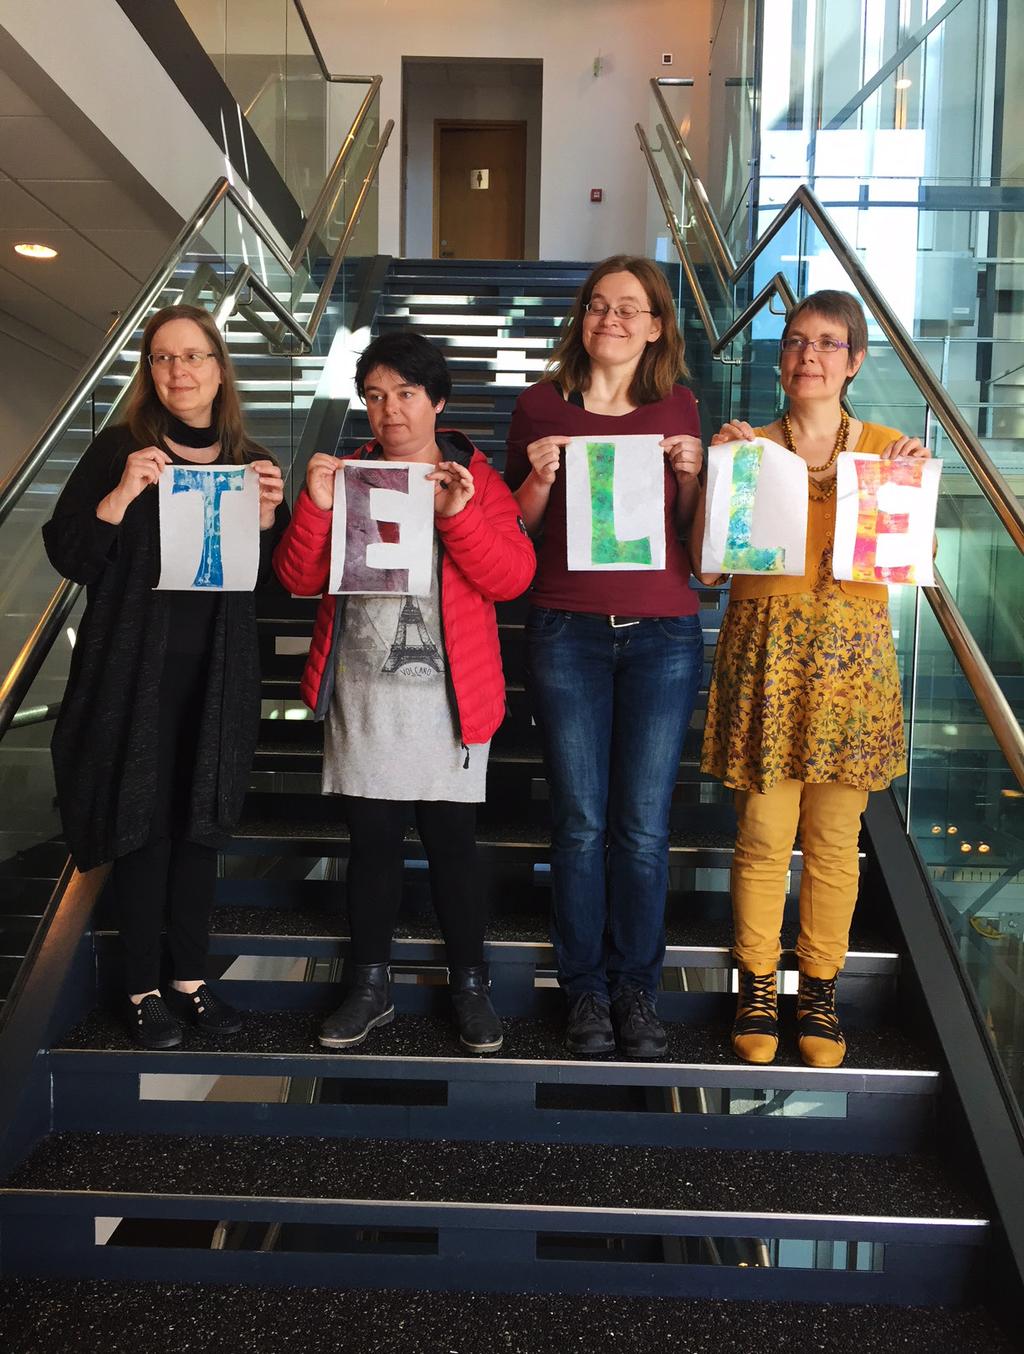 KEHITTÄMISHANKKEET Telle- Teaching and Learning for Life in Europe 2015-2017 Viimeisenä hankevuonna Telle- hankkeessa oli vielä opettajavaihtoviikko ja kaksi kansainvälistä tapahtumaa.